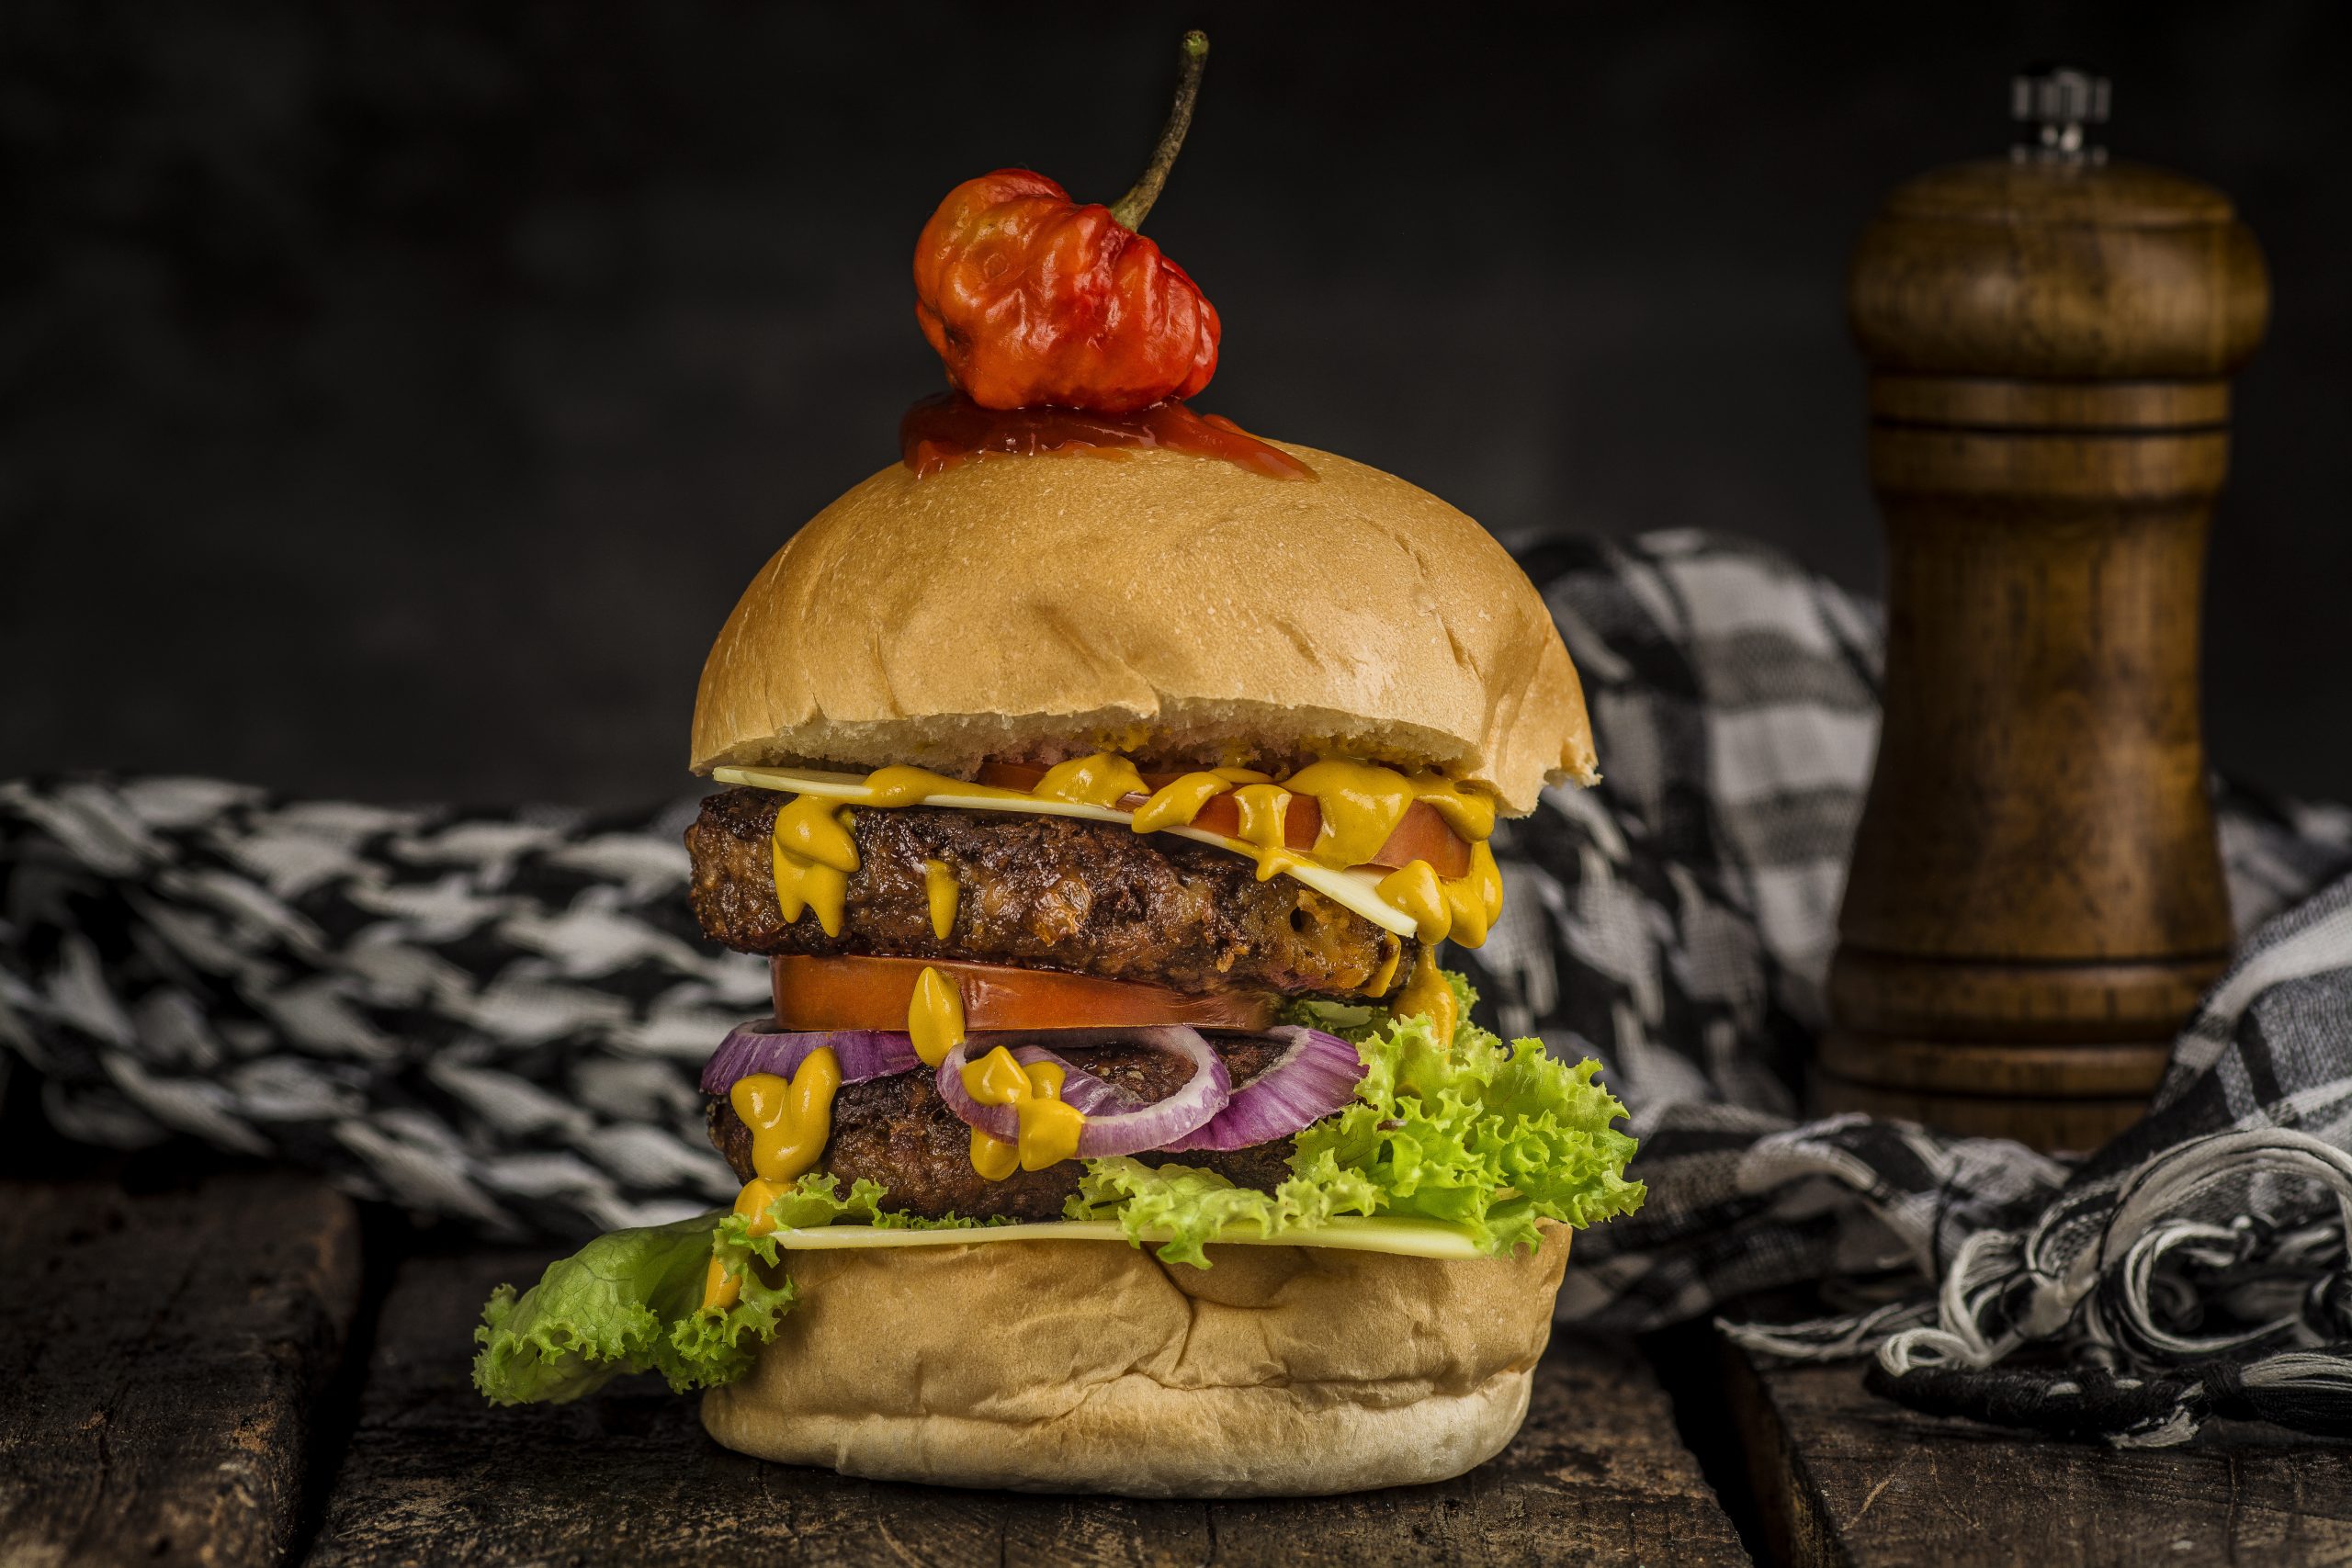 A chiaroscuro photograph of a burger 